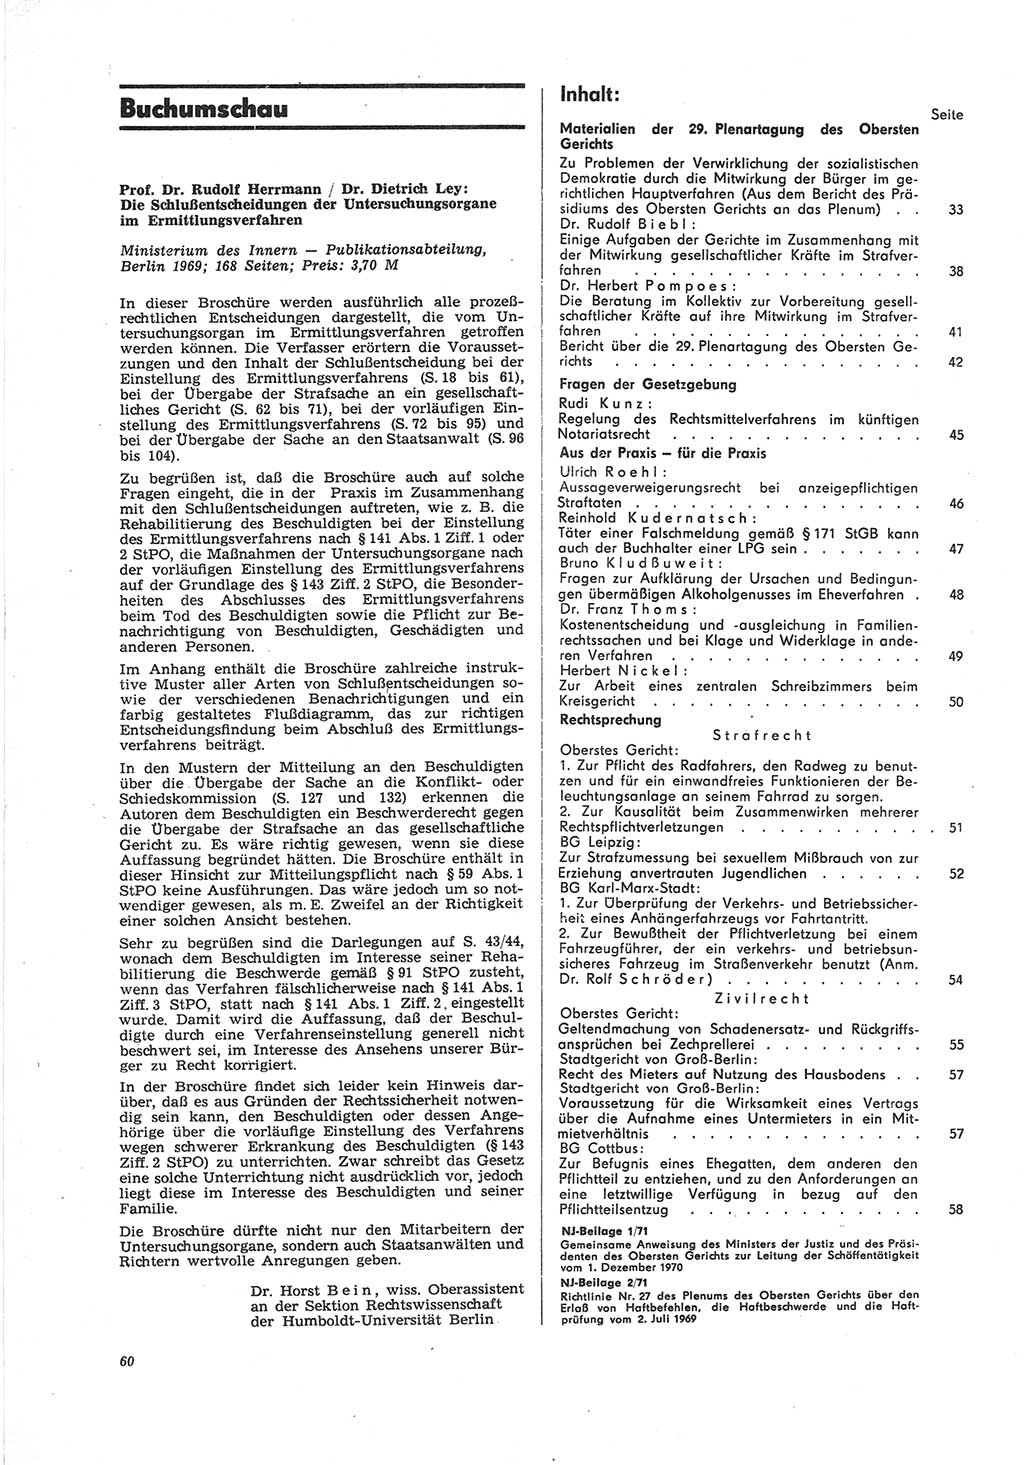 Neue Justiz (NJ), Zeitschrift für Recht und Rechtswissenschaft [Deutsche Demokratische Republik (DDR)], 25. Jahrgang 1971, Seite 60 (NJ DDR 1971, S. 60)